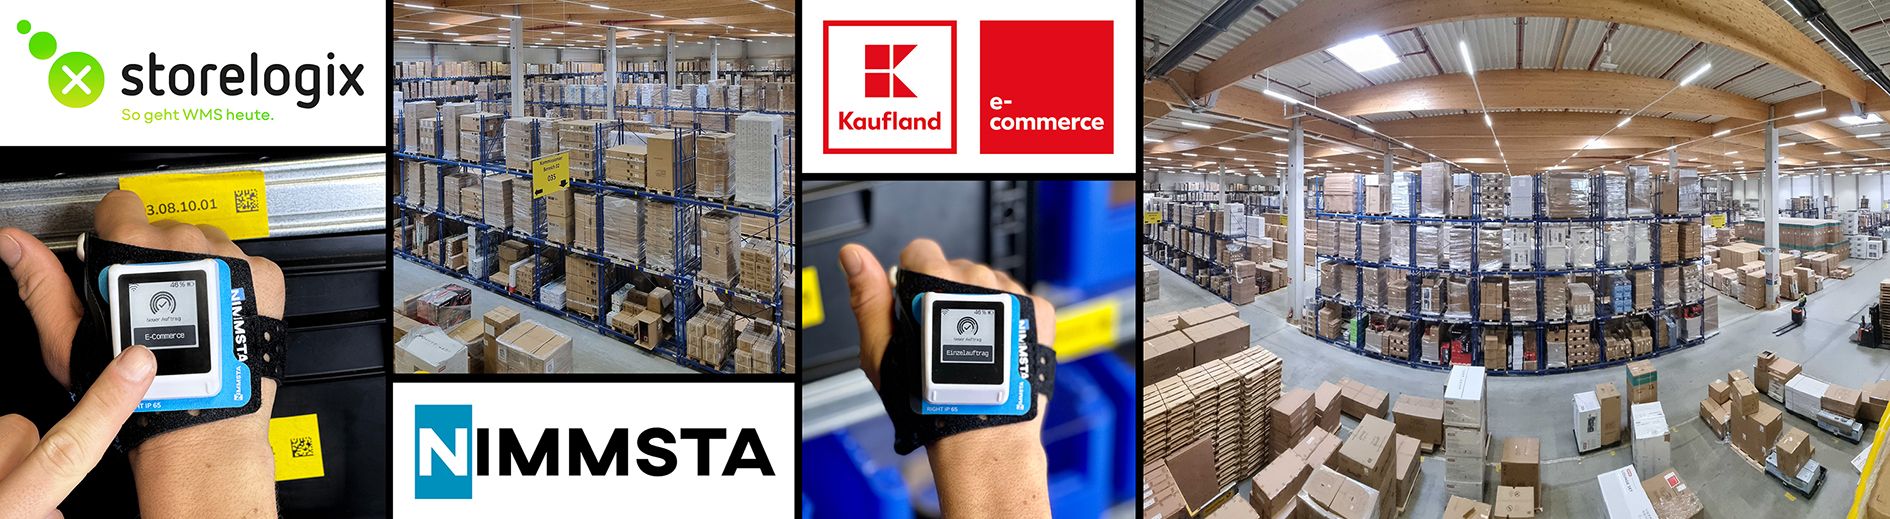 Das Lager von Kaufland e-commerce in Lutterberg und die Industrial Smart Watch von Nimmsta.